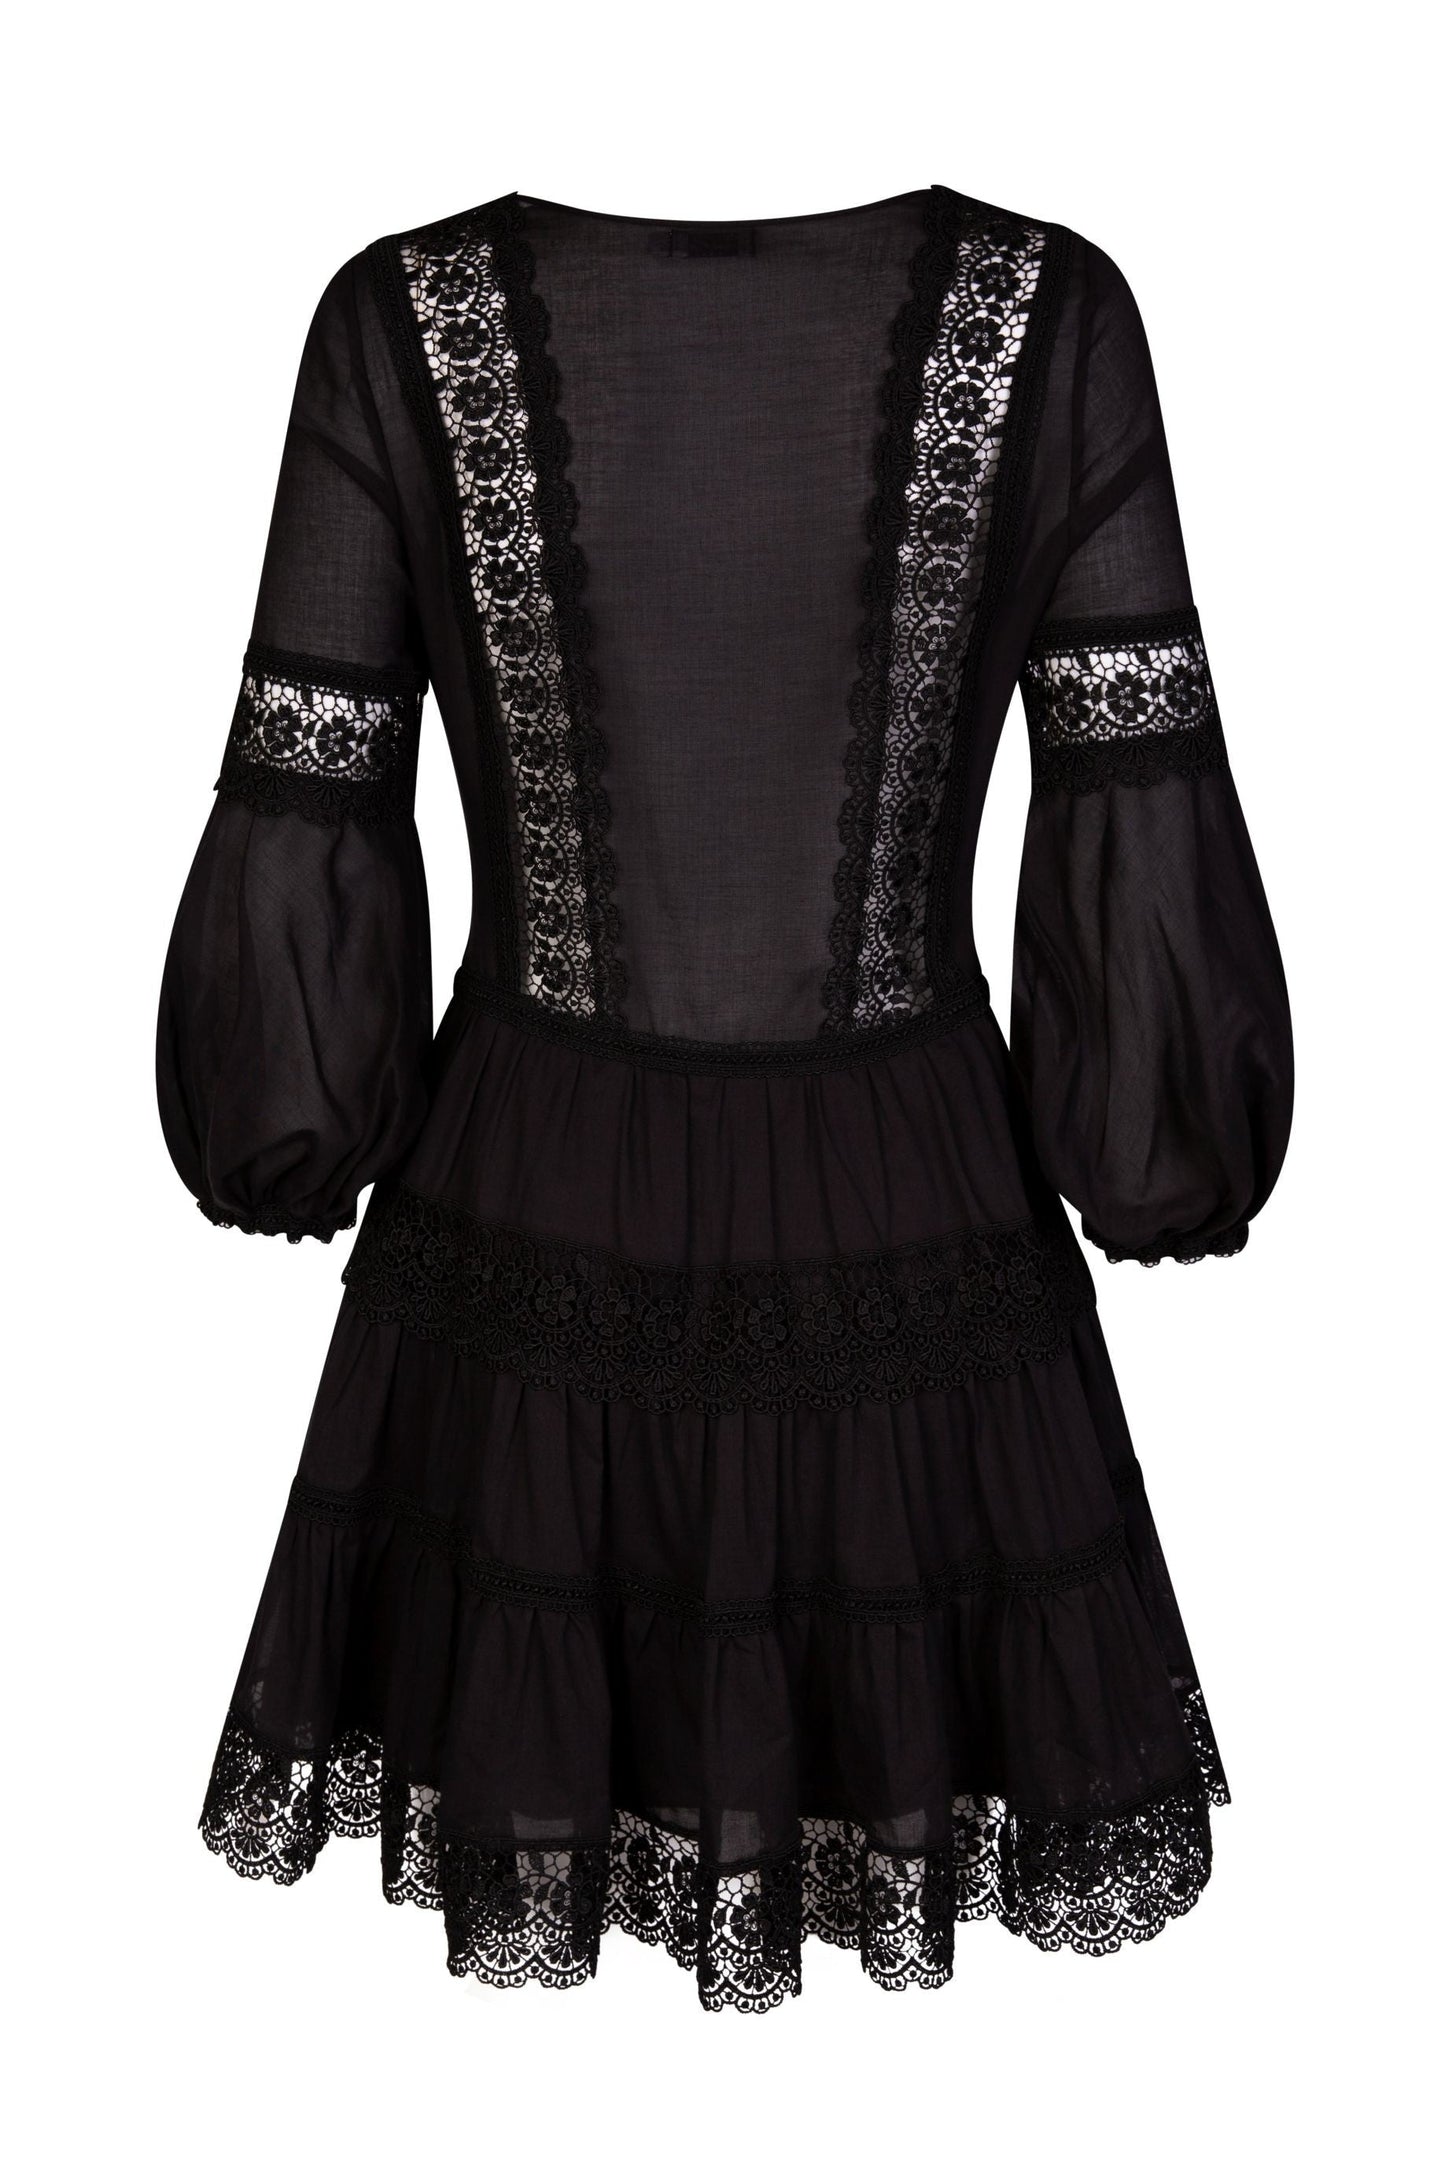 Charo Ruiz Ibiza Violette V-Neck Short Dress - Premium Dresses from Charo Ruiz - Just $670! Shop now at Marina St Barth